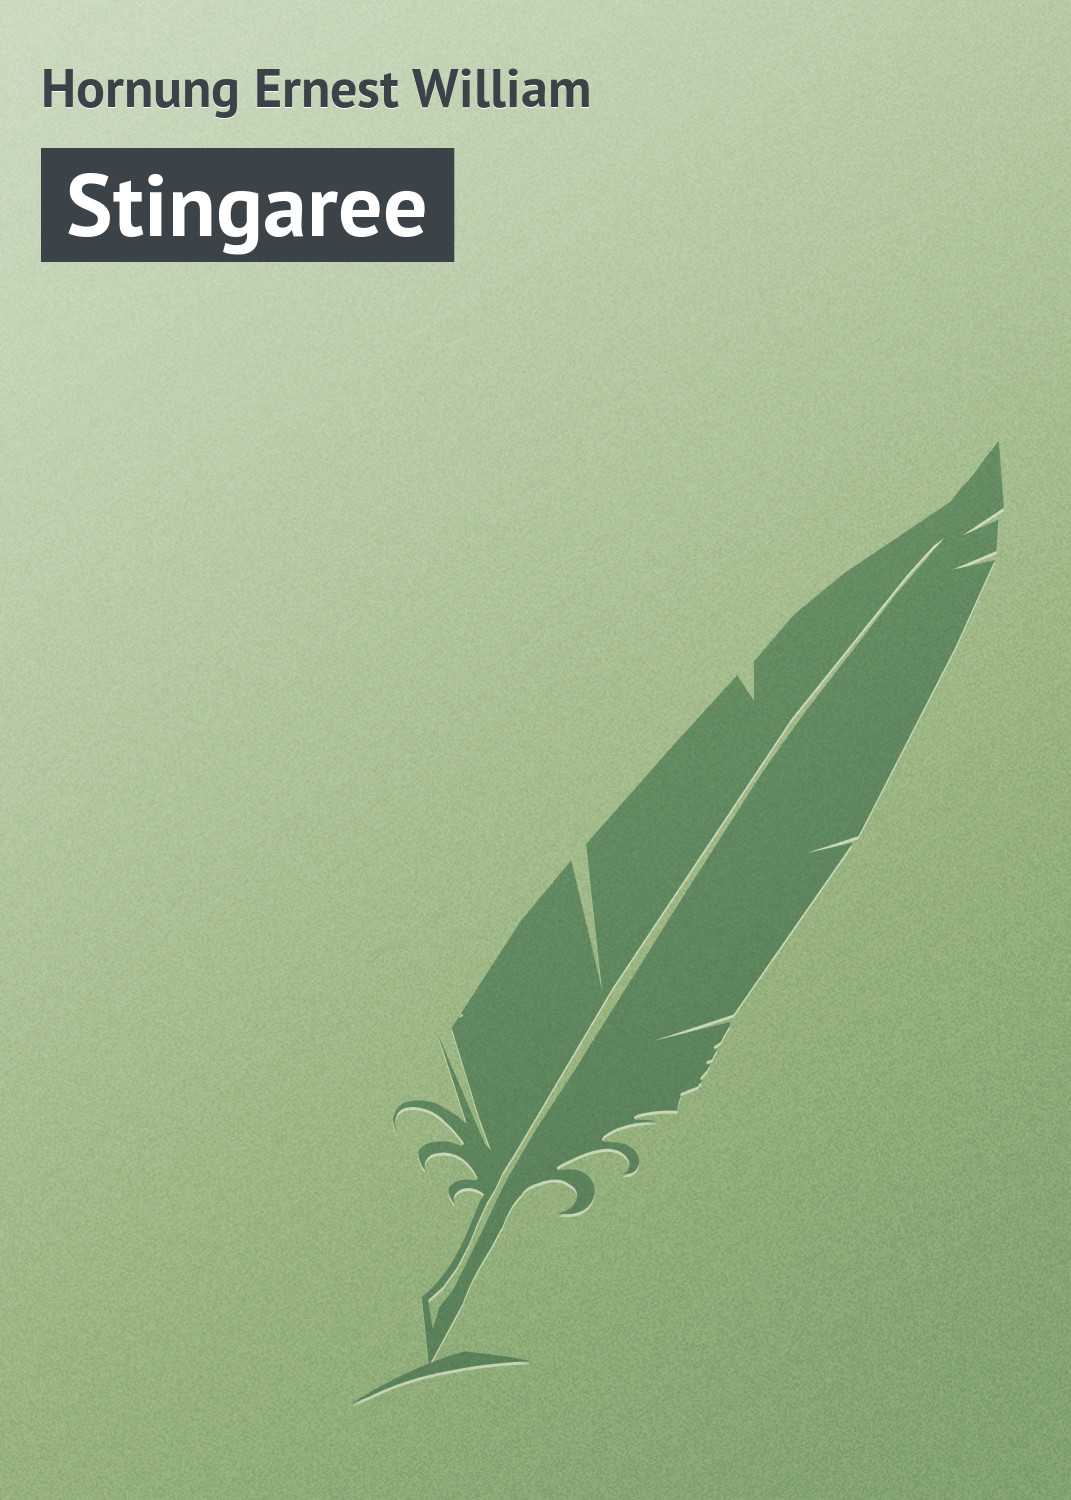 Книга Stingaree из серии , созданная Ernest Hornung, может относится к жанру Иностранные языки, Зарубежная классика. Стоимость электронной книги Stingaree с идентификатором 23161675 составляет 5.99 руб.